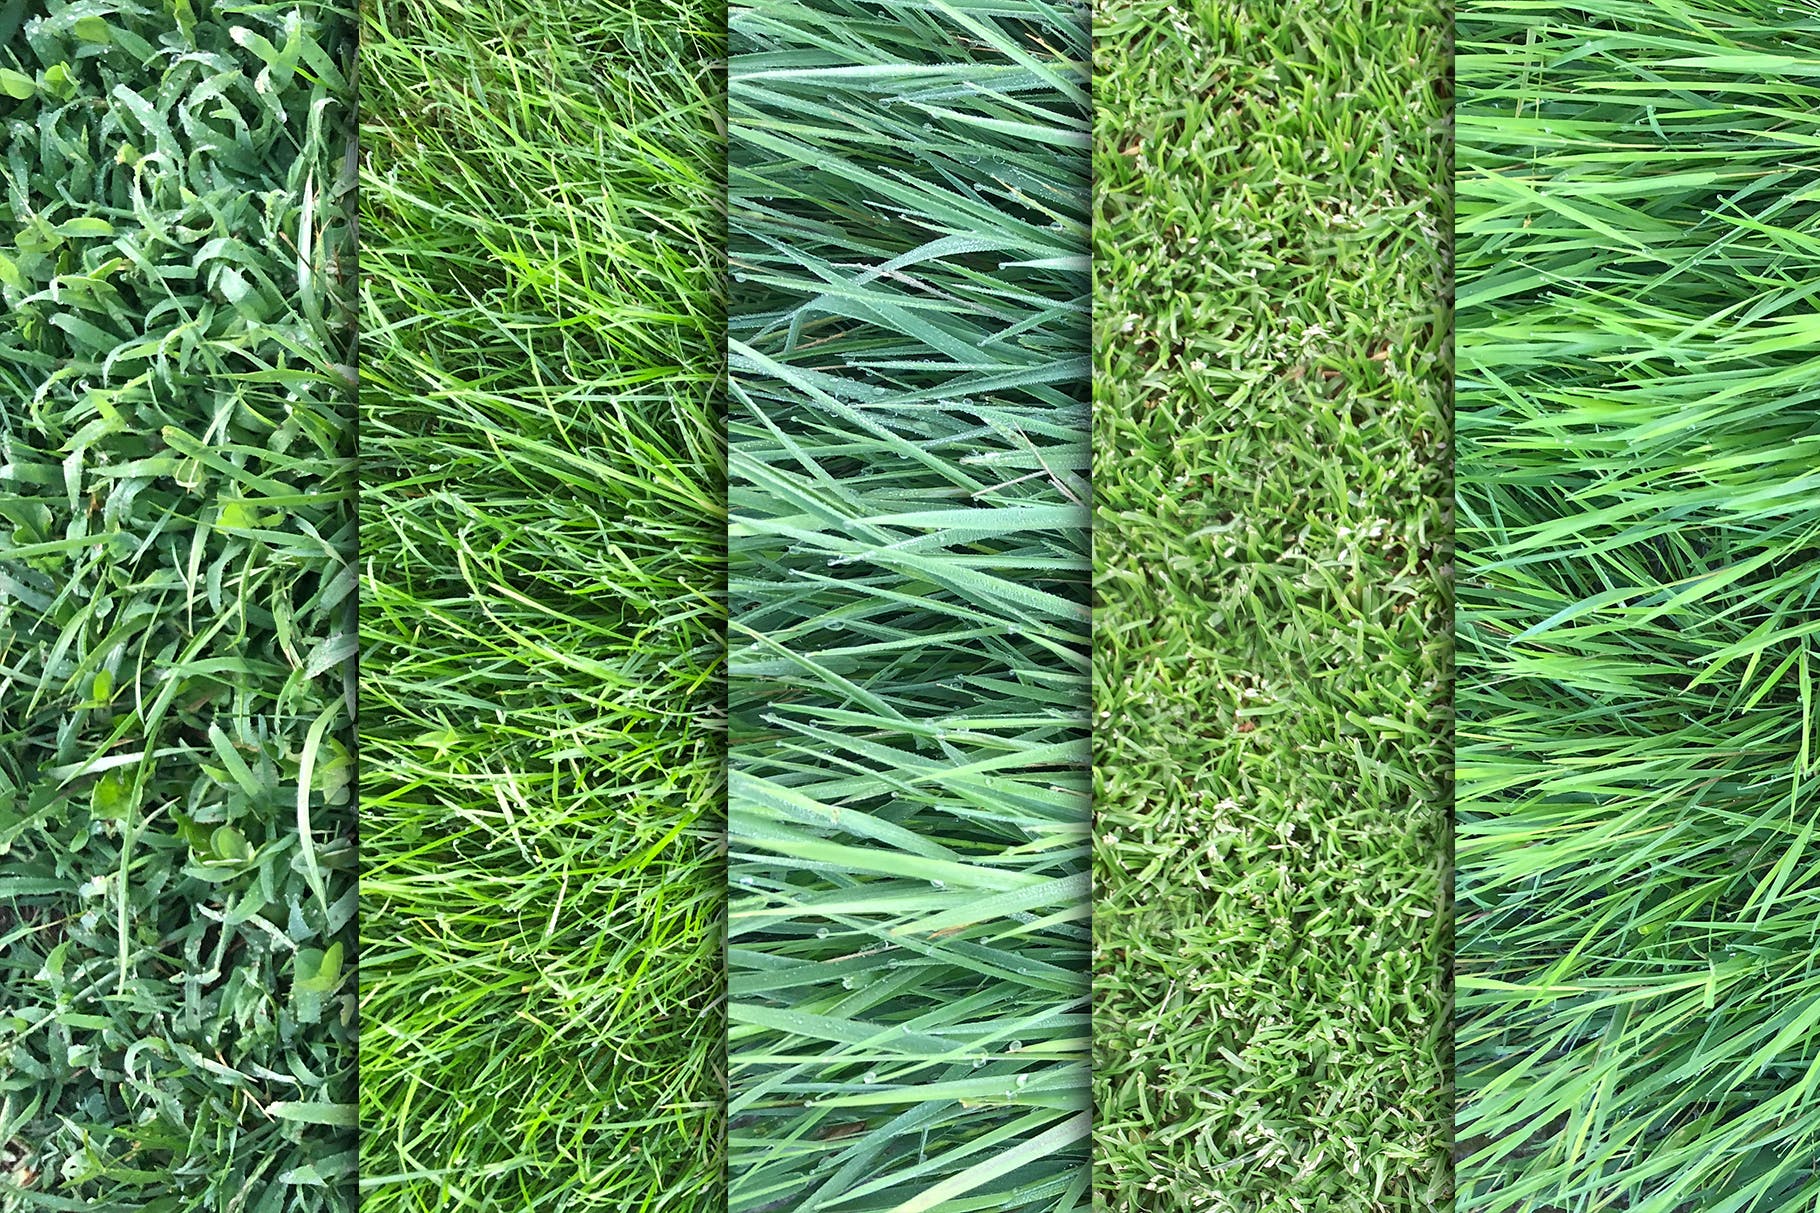 10张高清绿茵草坪照片背景素材v3 Grass Textures x10 Vol 3插图1